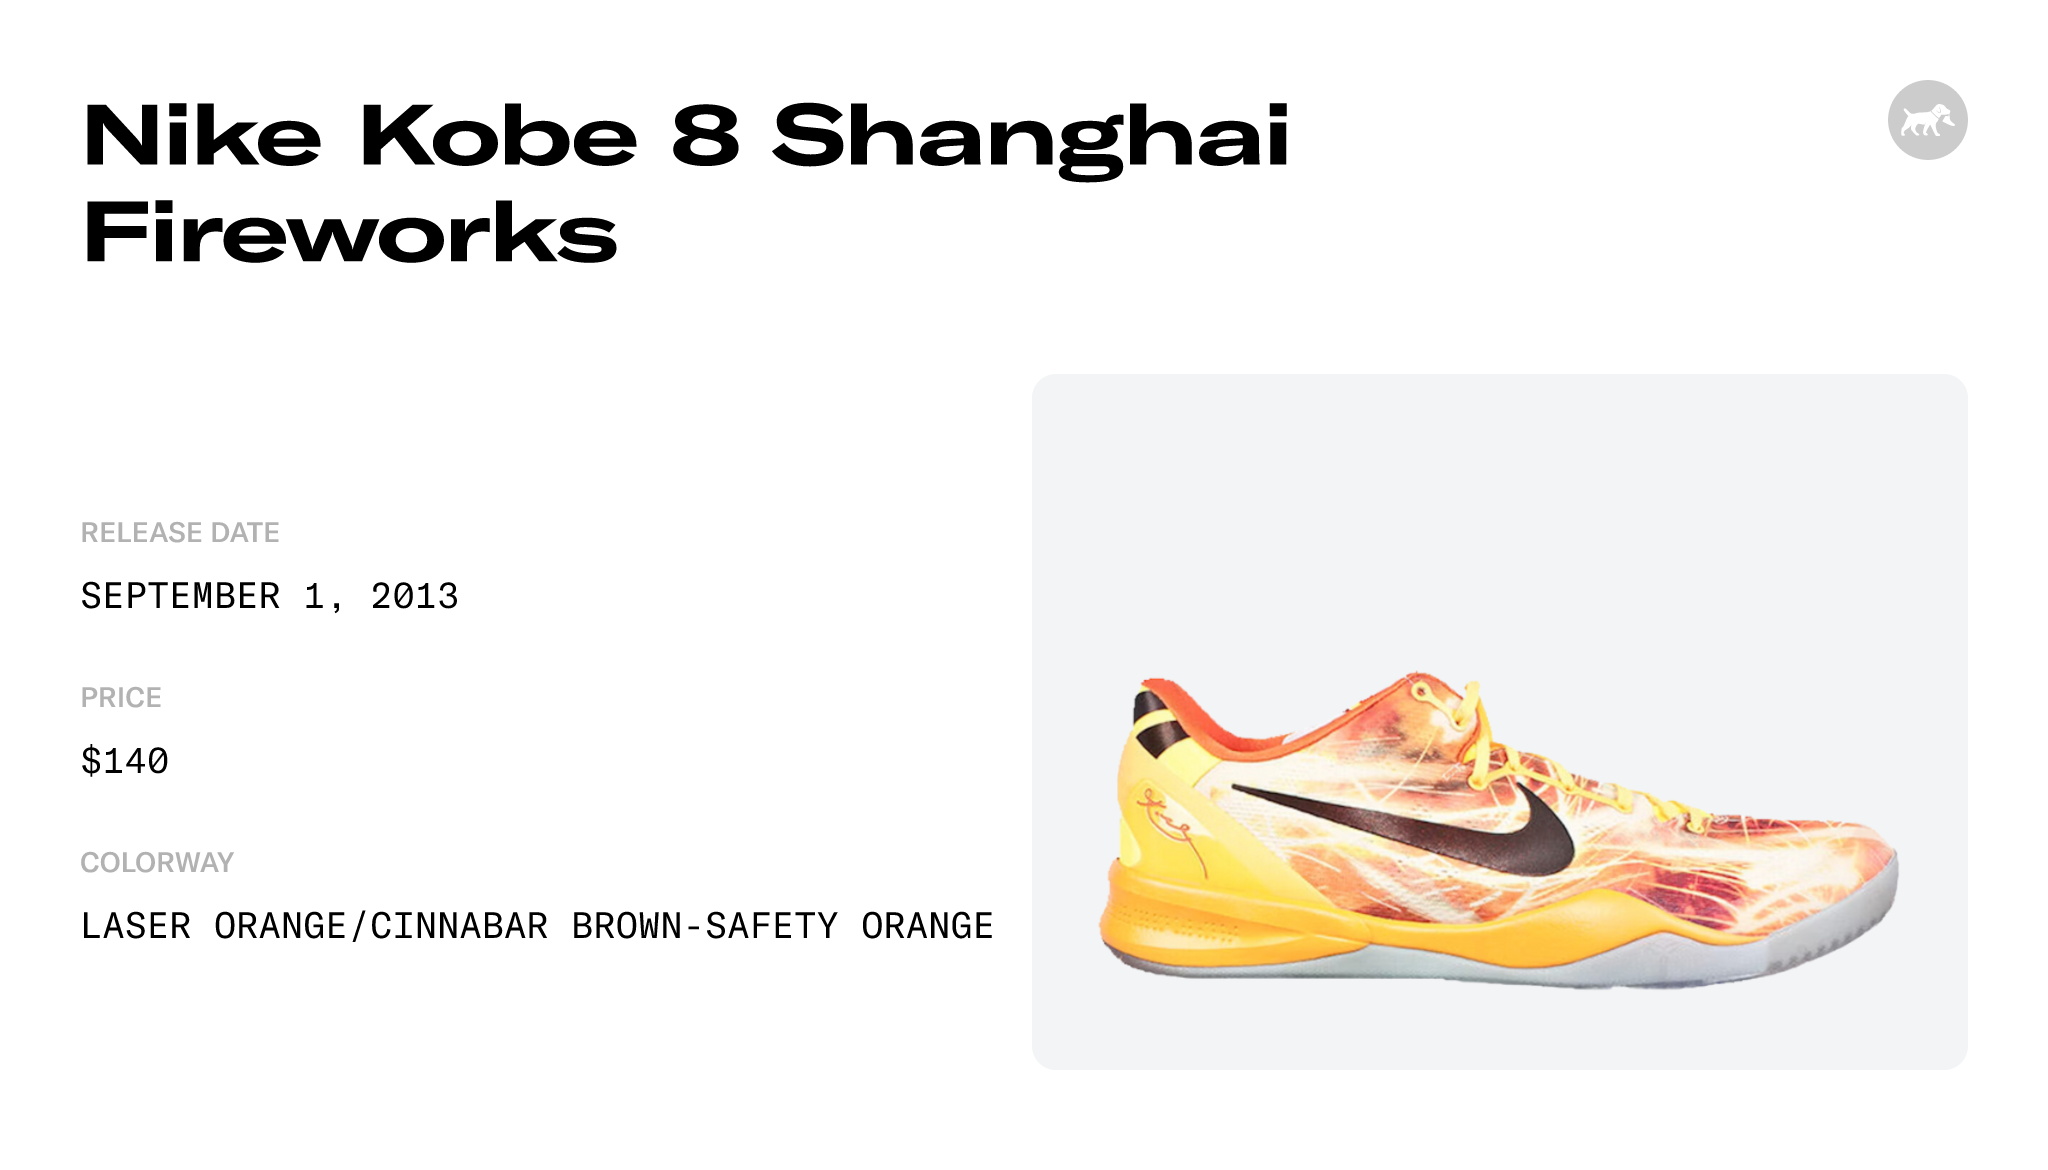 Nike Kobe 8 Shanghai Fireworks - 555035-800 Raffles and Release Date